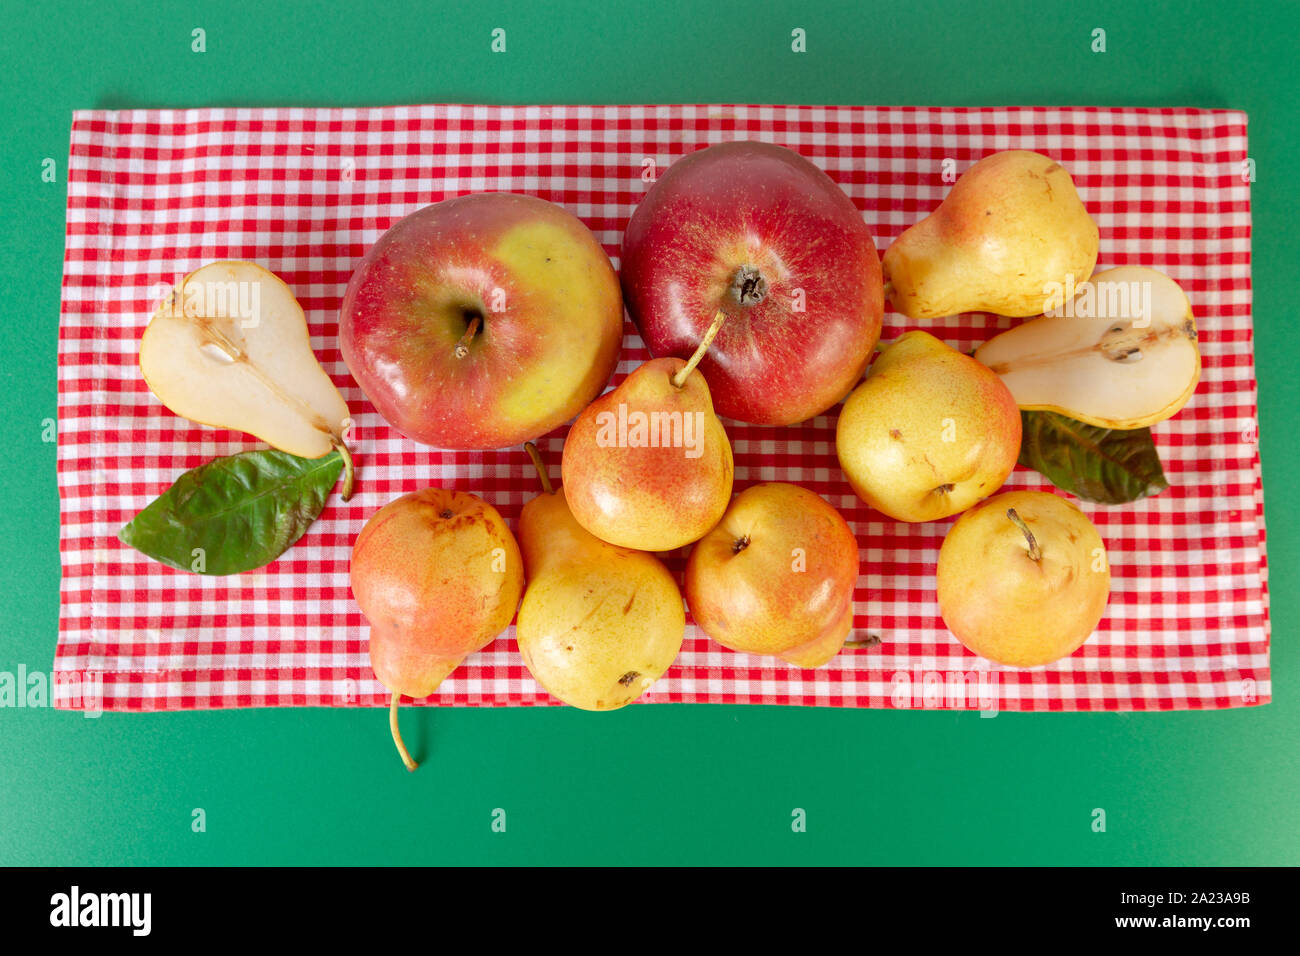 Pere e mele laici piatto sul tavolo verde con rosso tovaglia a scacchi. Autunno ancora in vita. Dal design rustico. Foto Stock